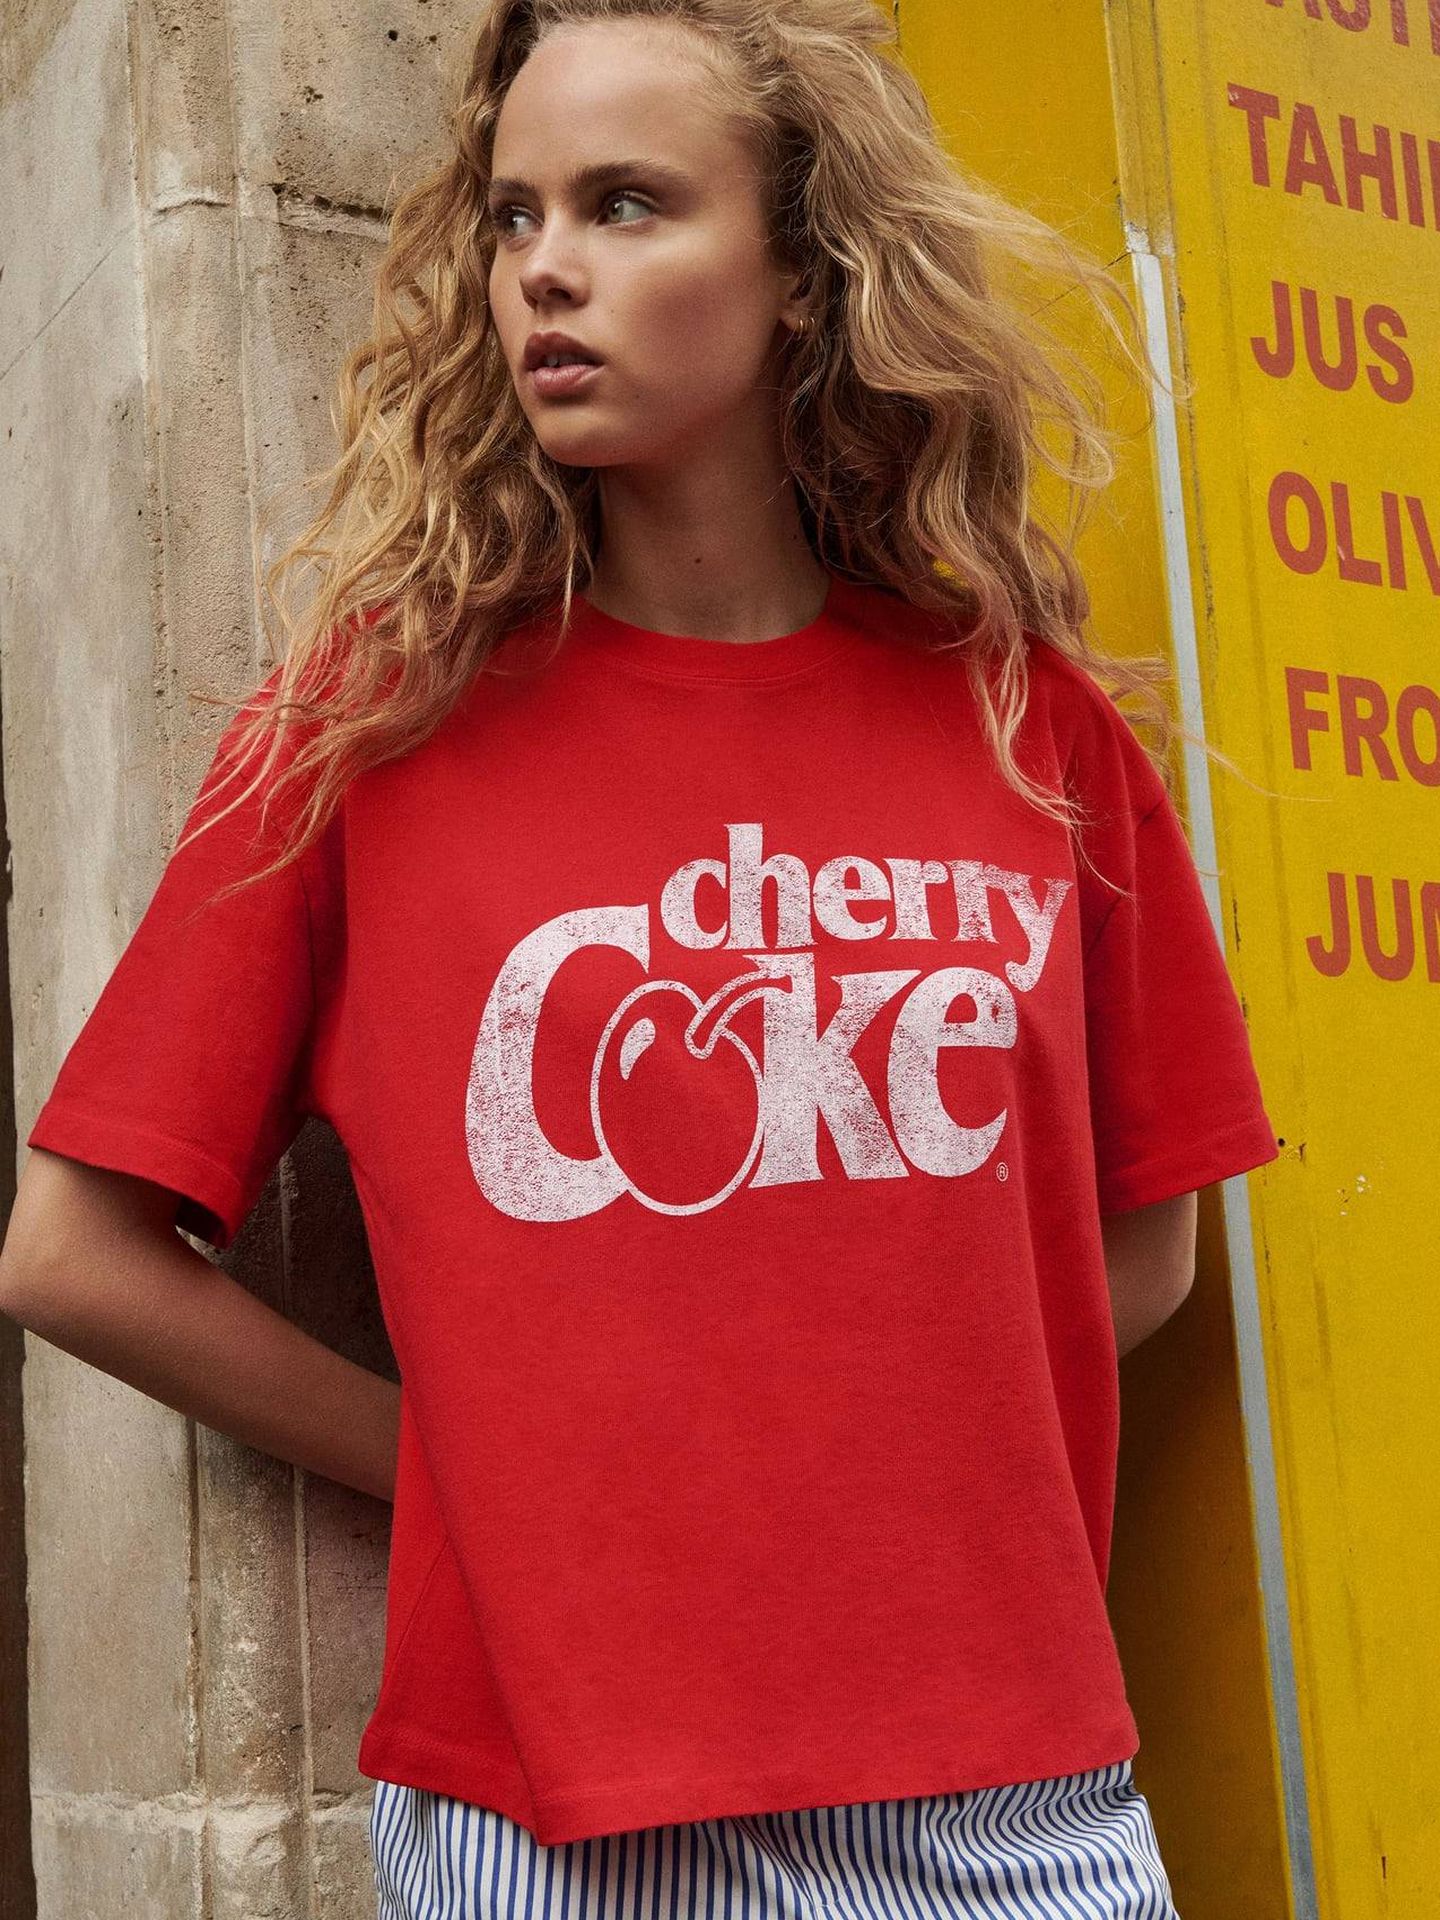 Camiseta de Cherry Coke de Zara. (Cortesía)